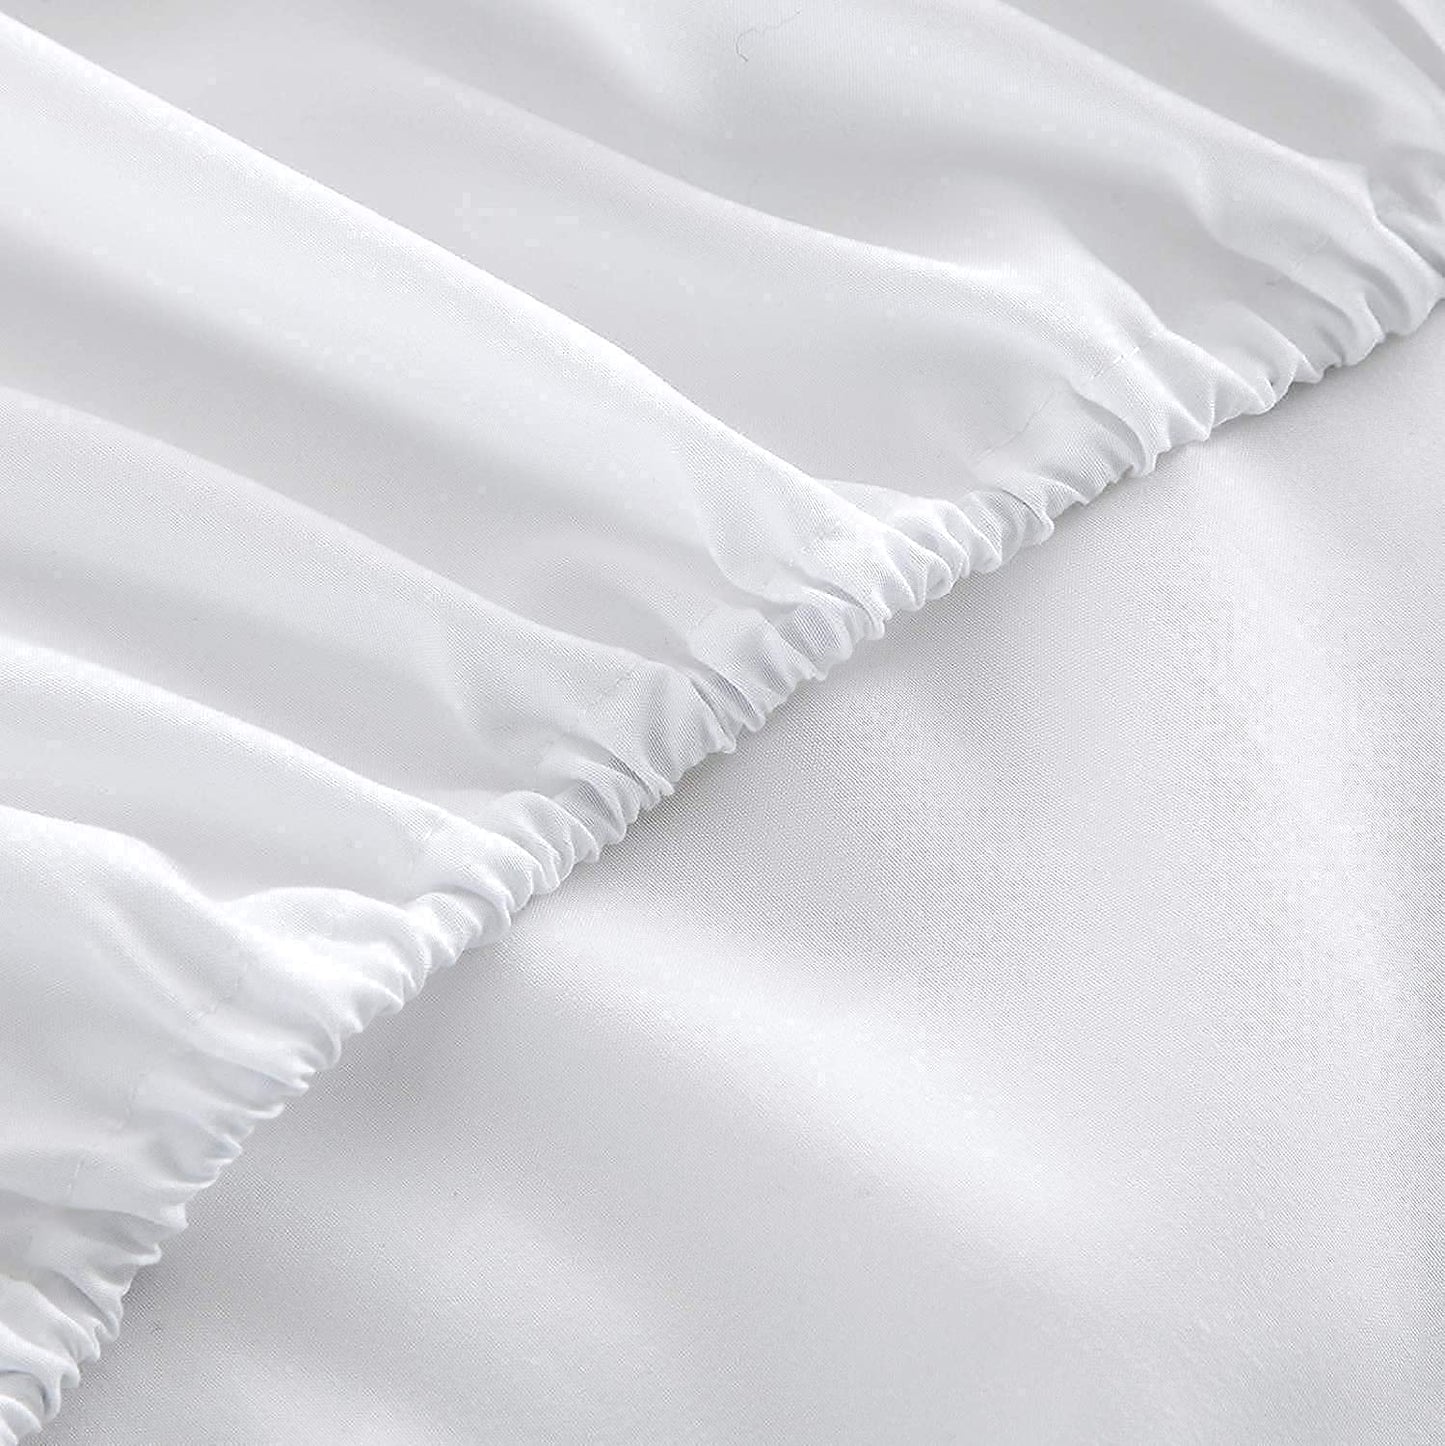 Twin-XL White Sheet Set Egyptian Cotton 1000TC - All Sizes